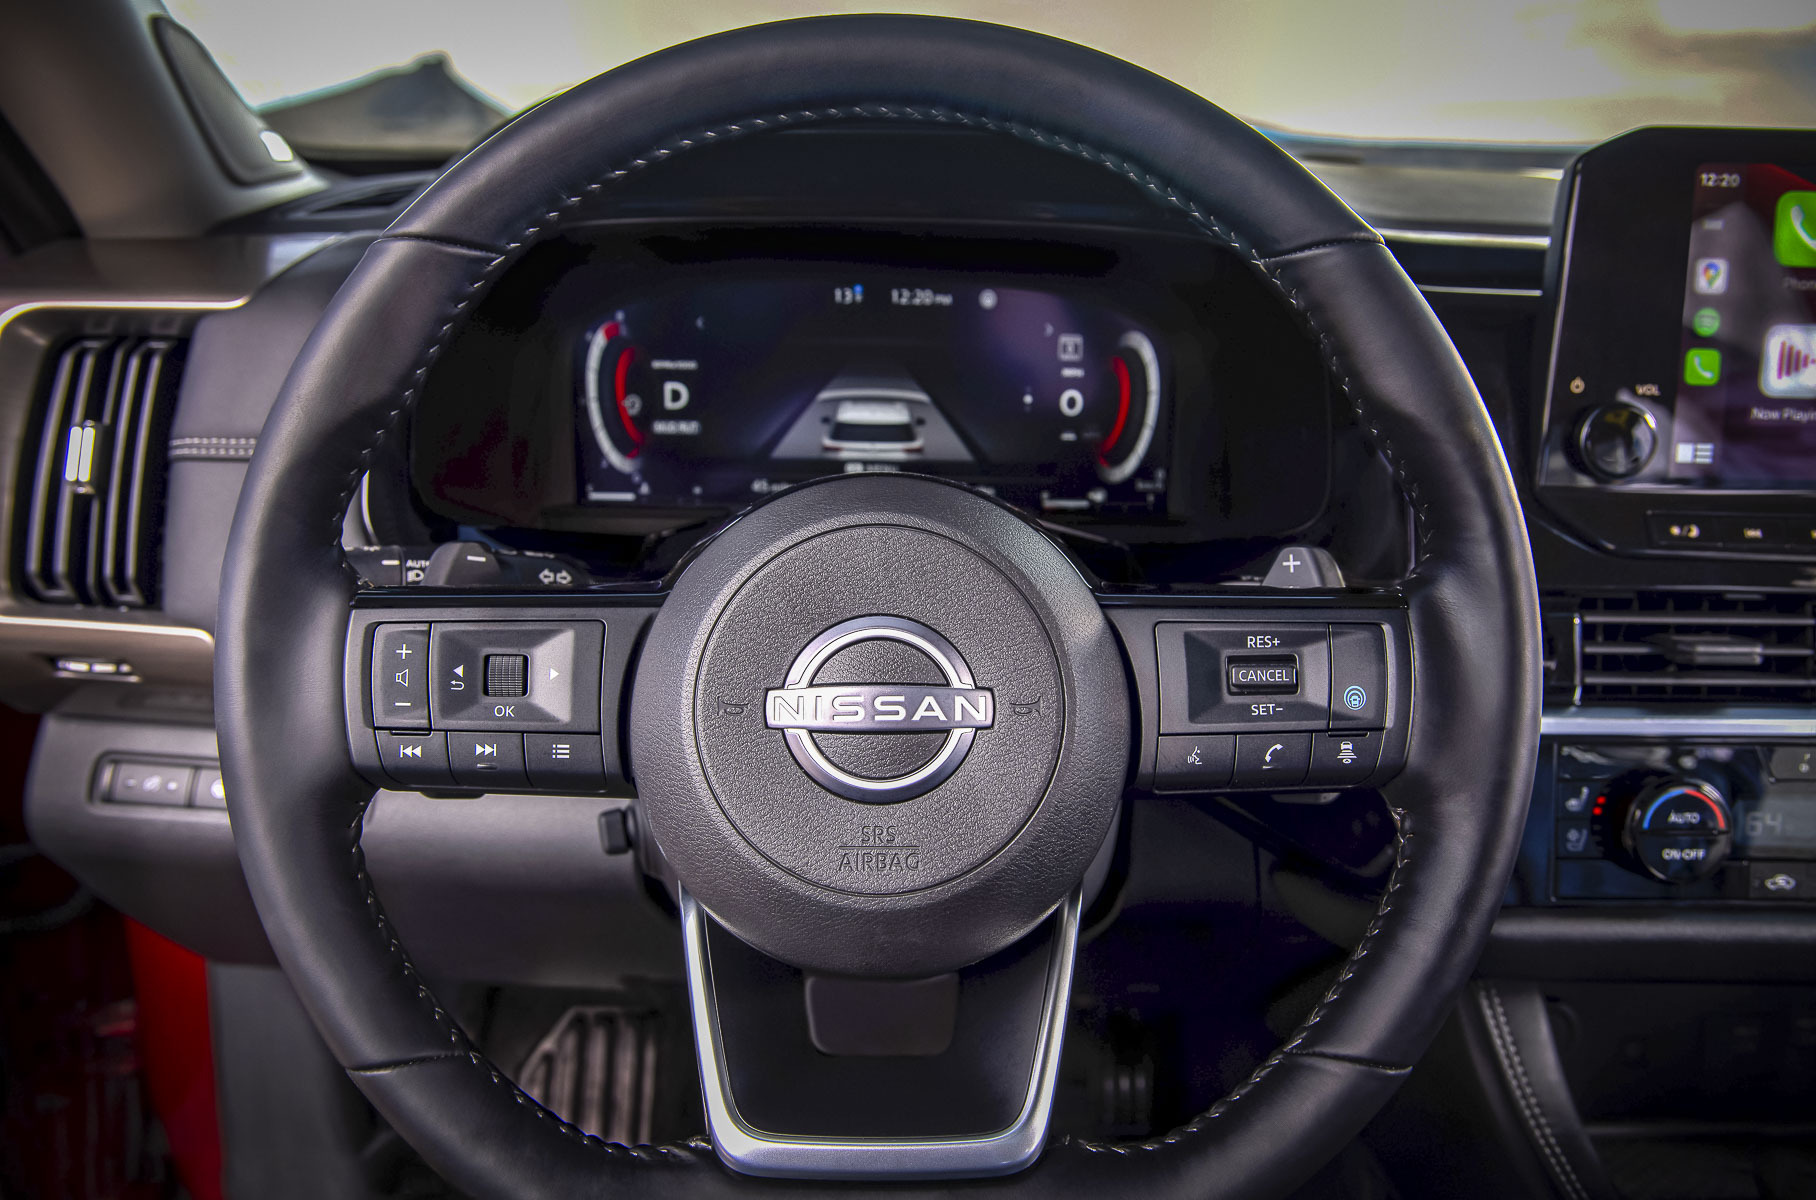 Восемь мест, автомат и V6: Nissan представил новый Pathfinder, который доберется до России